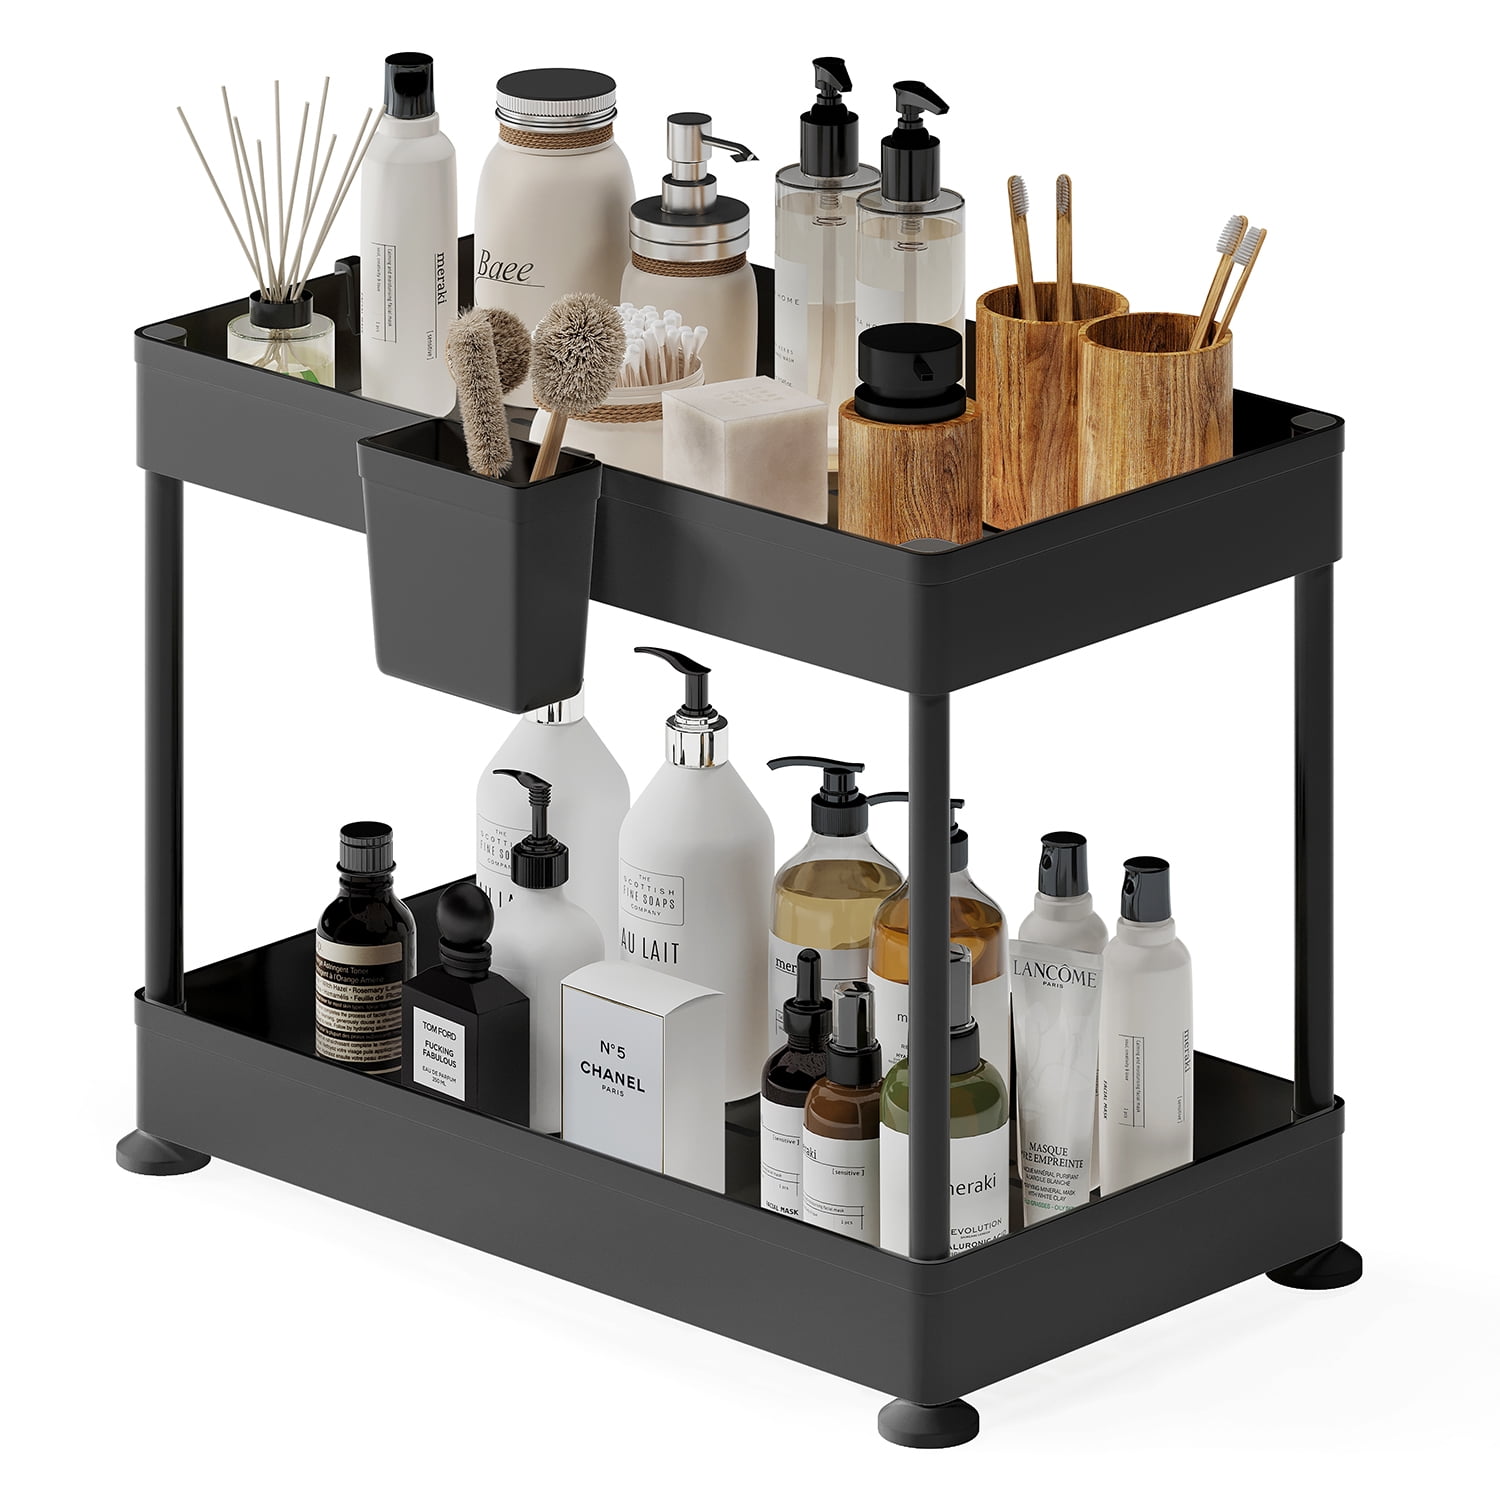 Storagebud 2-tier Under Sink Organizer - Black - 1 Pack : Target